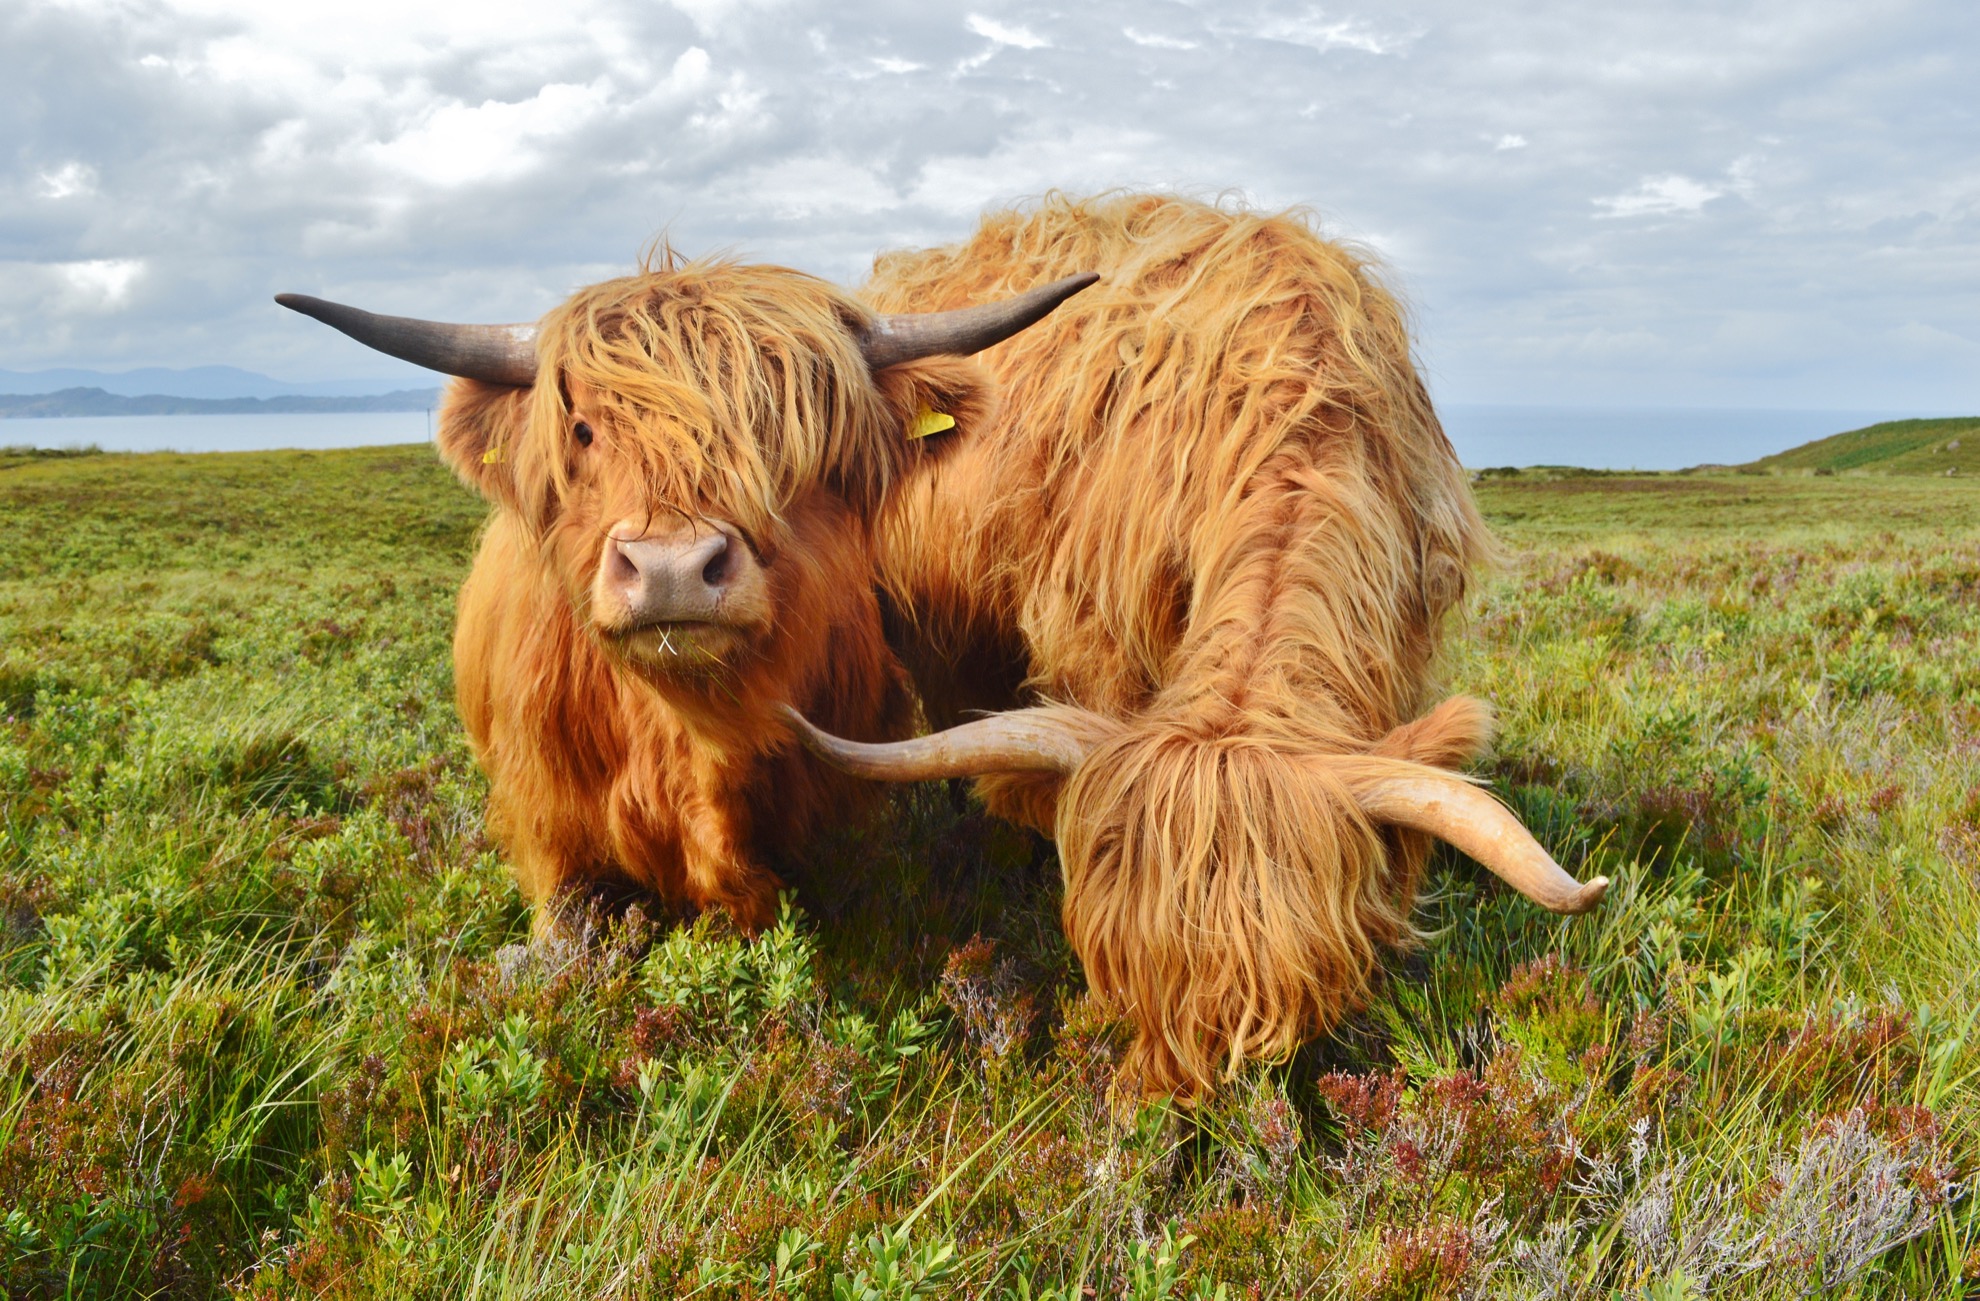 Conoce al ganado Highland, las majestuosas vacas y toros de Escocia - 21